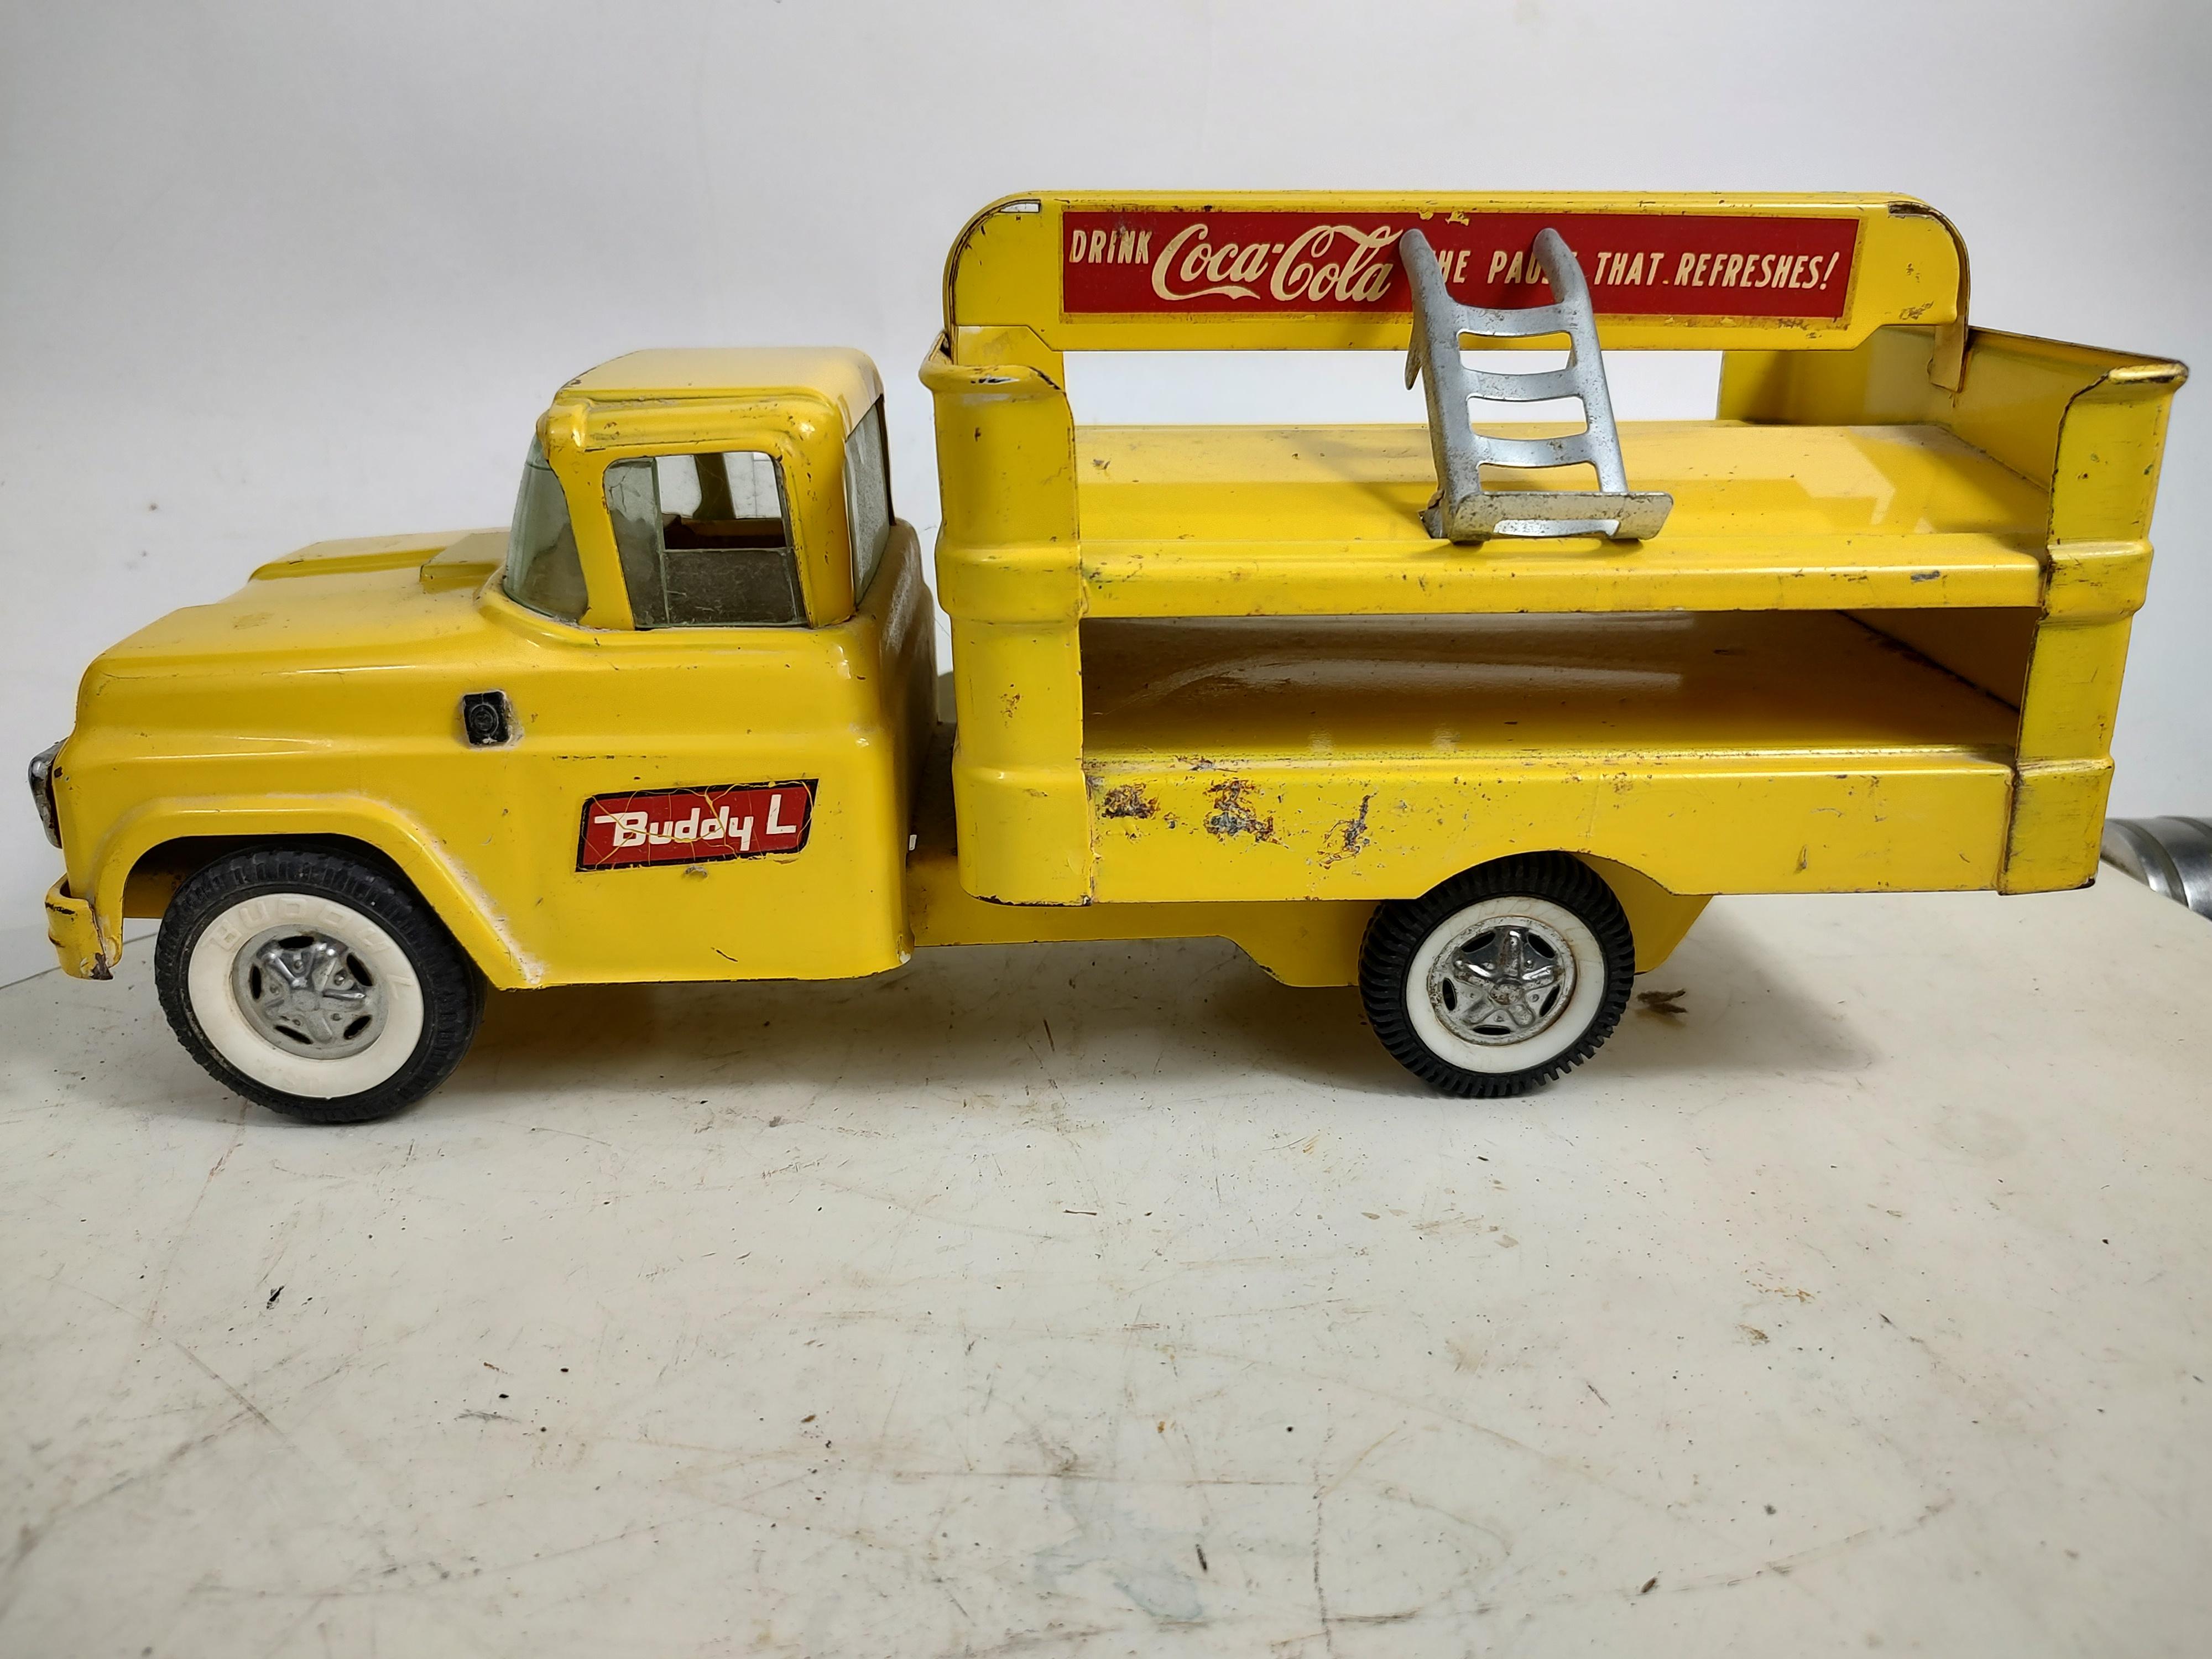 Fabelhafter Kumpel L Coca Cola Lieferwagen mit Aluminium Handkarre aus den späten fünfziger frühen sechziger Jahren. Der eine Hinterreifen ist nicht viel kleiner, auch das Profil ist ein wenig anders, aber sonst passt es. Dieselbe Radkappe,